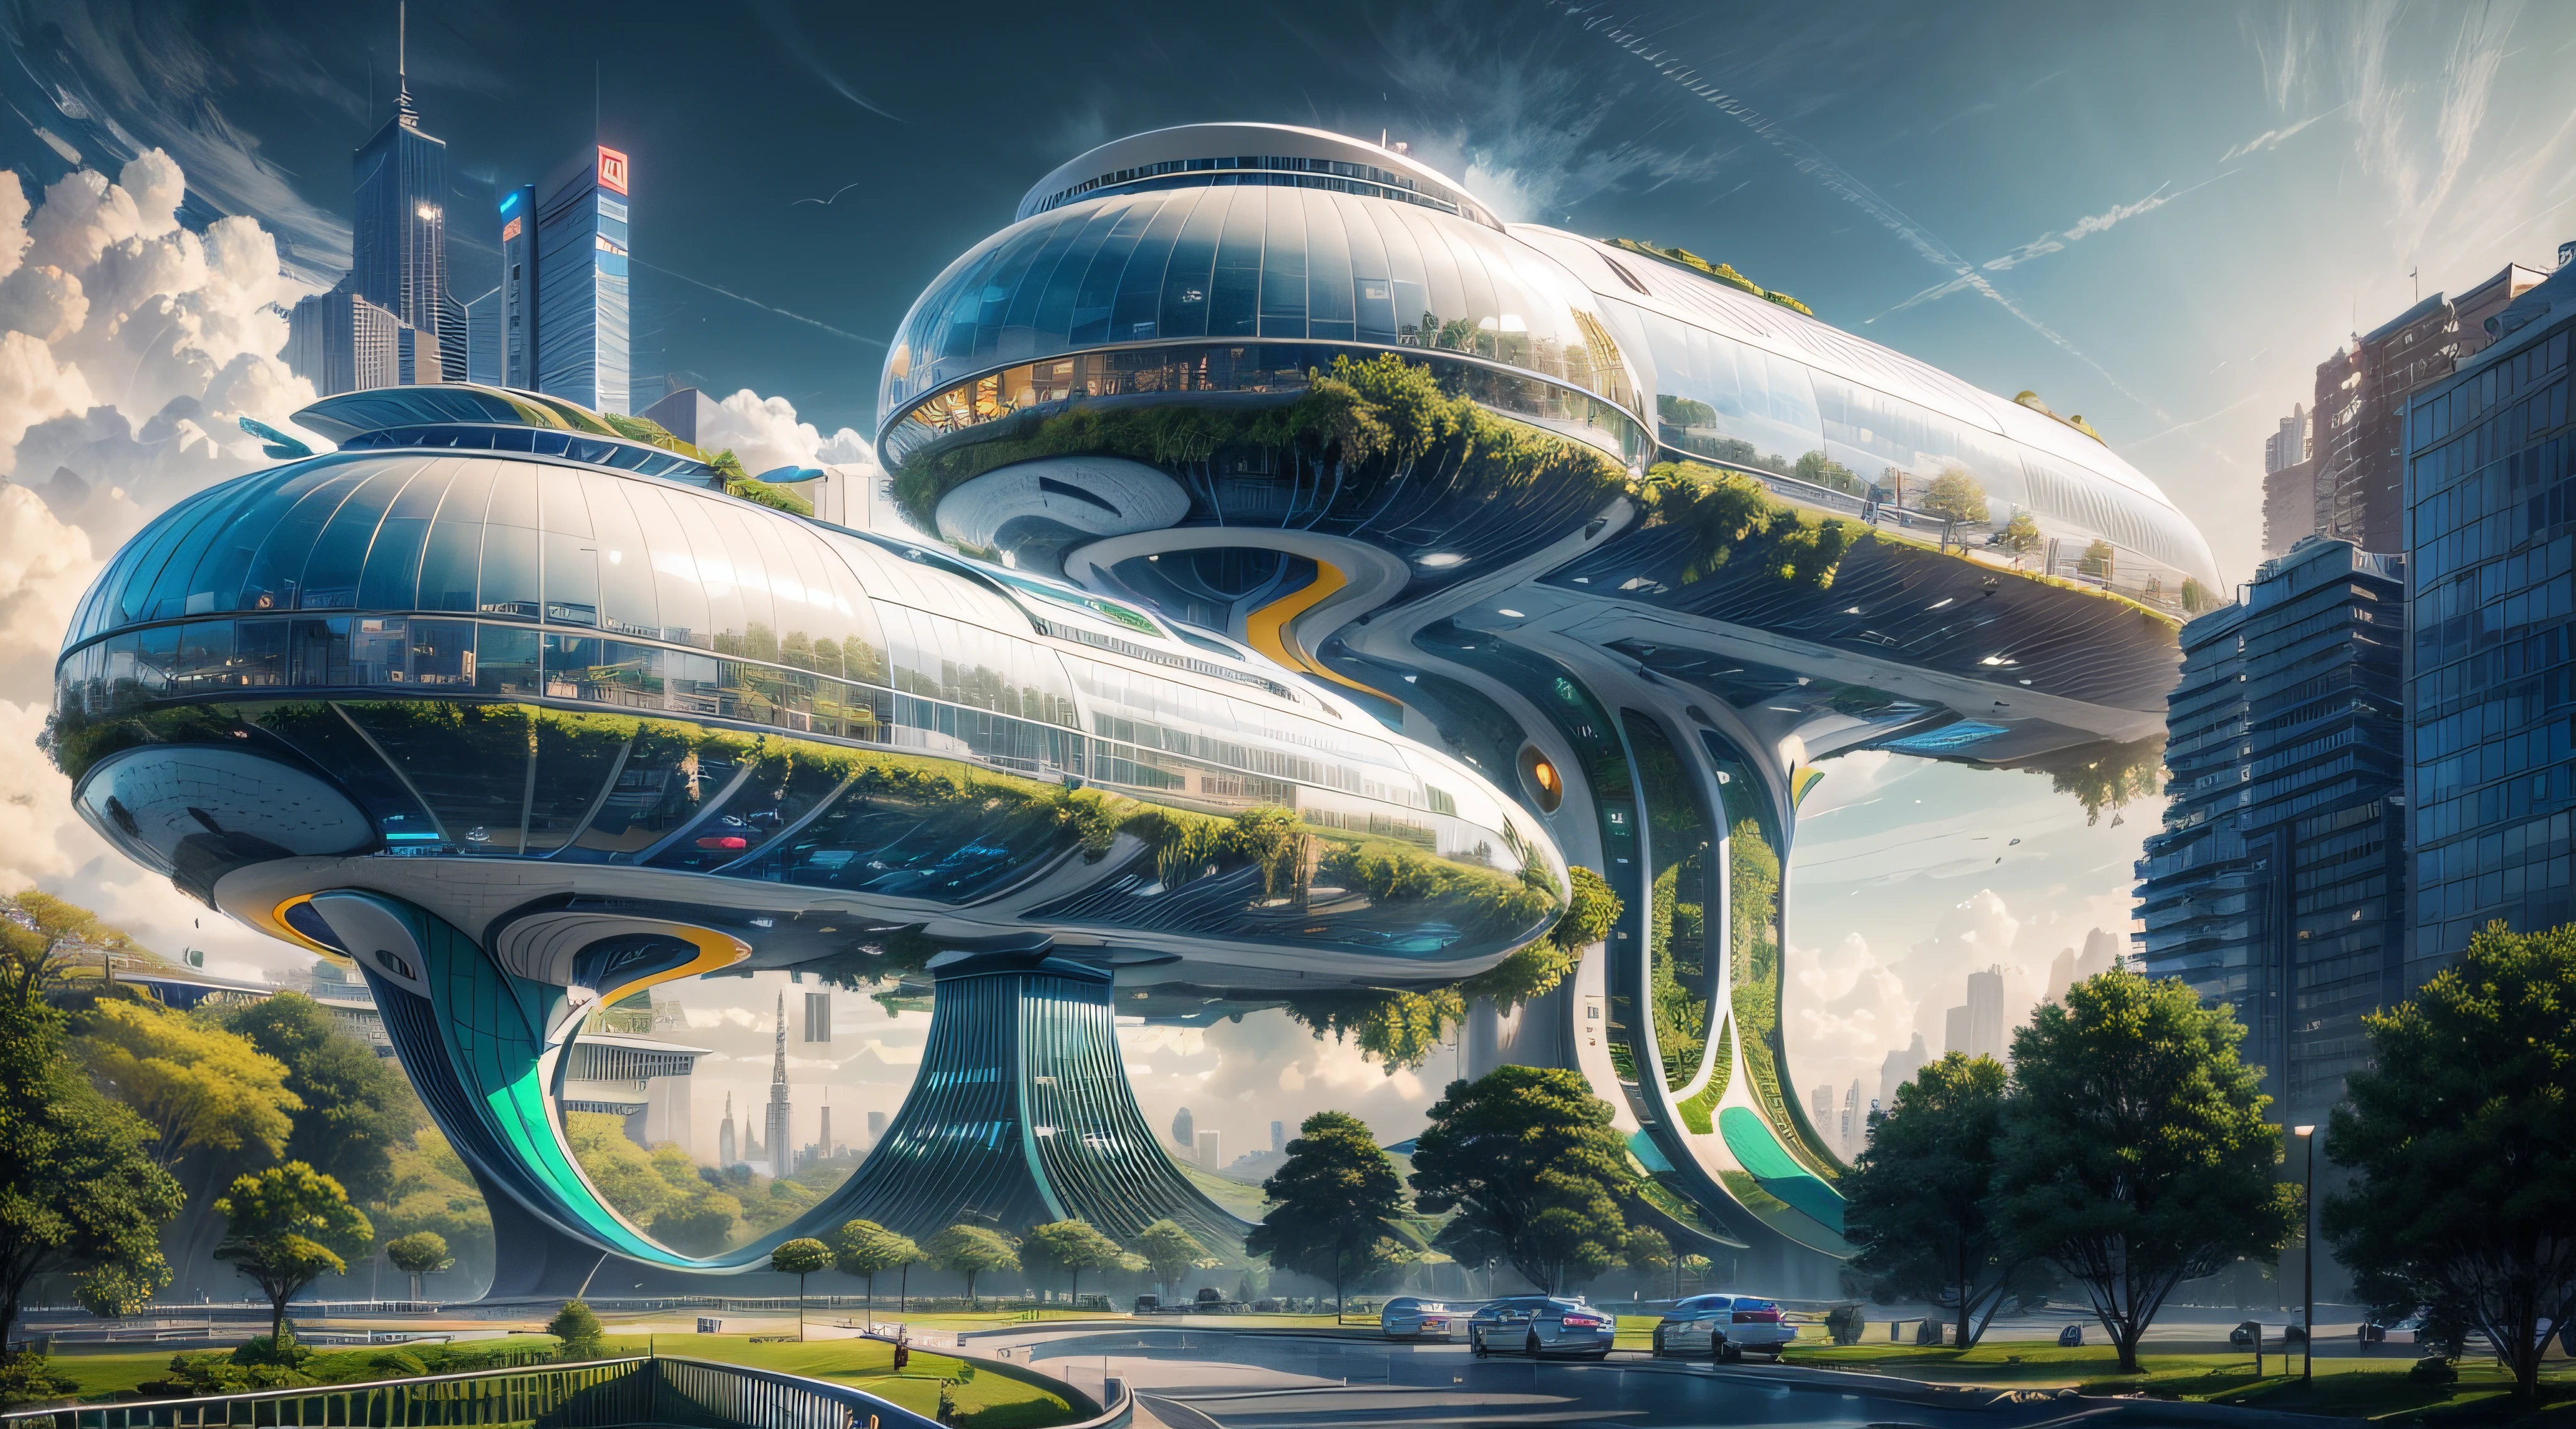 (最好的质量,4k,8千,高分辨率,杰作:1.2),极其详细,(实际的,真实感,照片般逼真:1.37),未来派漂浮城市,未来科技,巨大的城市高科技平板平台,飞艇,漂浮在空中,未来城市,周围的小型飞艇,高科技半球形平台,彩灯,先进的架构,现代建筑,摩天大楼,访问云,风景秀丽,俯瞰城市,令人印象深刻的设计,与自然完美融合,充满活力的氛围,未来交通系统,悬挂式停车,透明路径,郁郁葱葱的绿色植物,空中花园,瀑布,壮丽的天际线,水面上的倒影,波光粼粼的河流,建筑创新,未来派摩天大楼,透明穹顶,该建筑的形状很不寻常,高架行人道,令人印象深刻的天际线,发光的灯光,未来科技,简约设计,风景名胜区,全景,穿云塔,鲜艳的色彩,史诗般的日出,史诗般的日落,炫目的灯光显示,神奇的氛围,未来城市,城市乌托邦,奢华生活方式,创新能源,可持续发展,智慧城市技术,先进的基础设施,宁静的气氛,自然与科技和谐相处,令人惊叹的城市景观,前所未有的城市规划,建筑与自然无缝衔接,高科技大都市,尖端工程奇迹,城市生活的未来,富有远见的建筑理念,节能建筑,与环境和谐相处,漂浮在云层之上的城市,乌托邦梦想照进现实,可能性是无止境,先进的交通网络,绿色能源整合,创新材料,令人印象深刻的全息显示,先进的通讯系统,令人惊叹的鸟瞰图,安静祥和的环境,现代主义美学,空灵之美